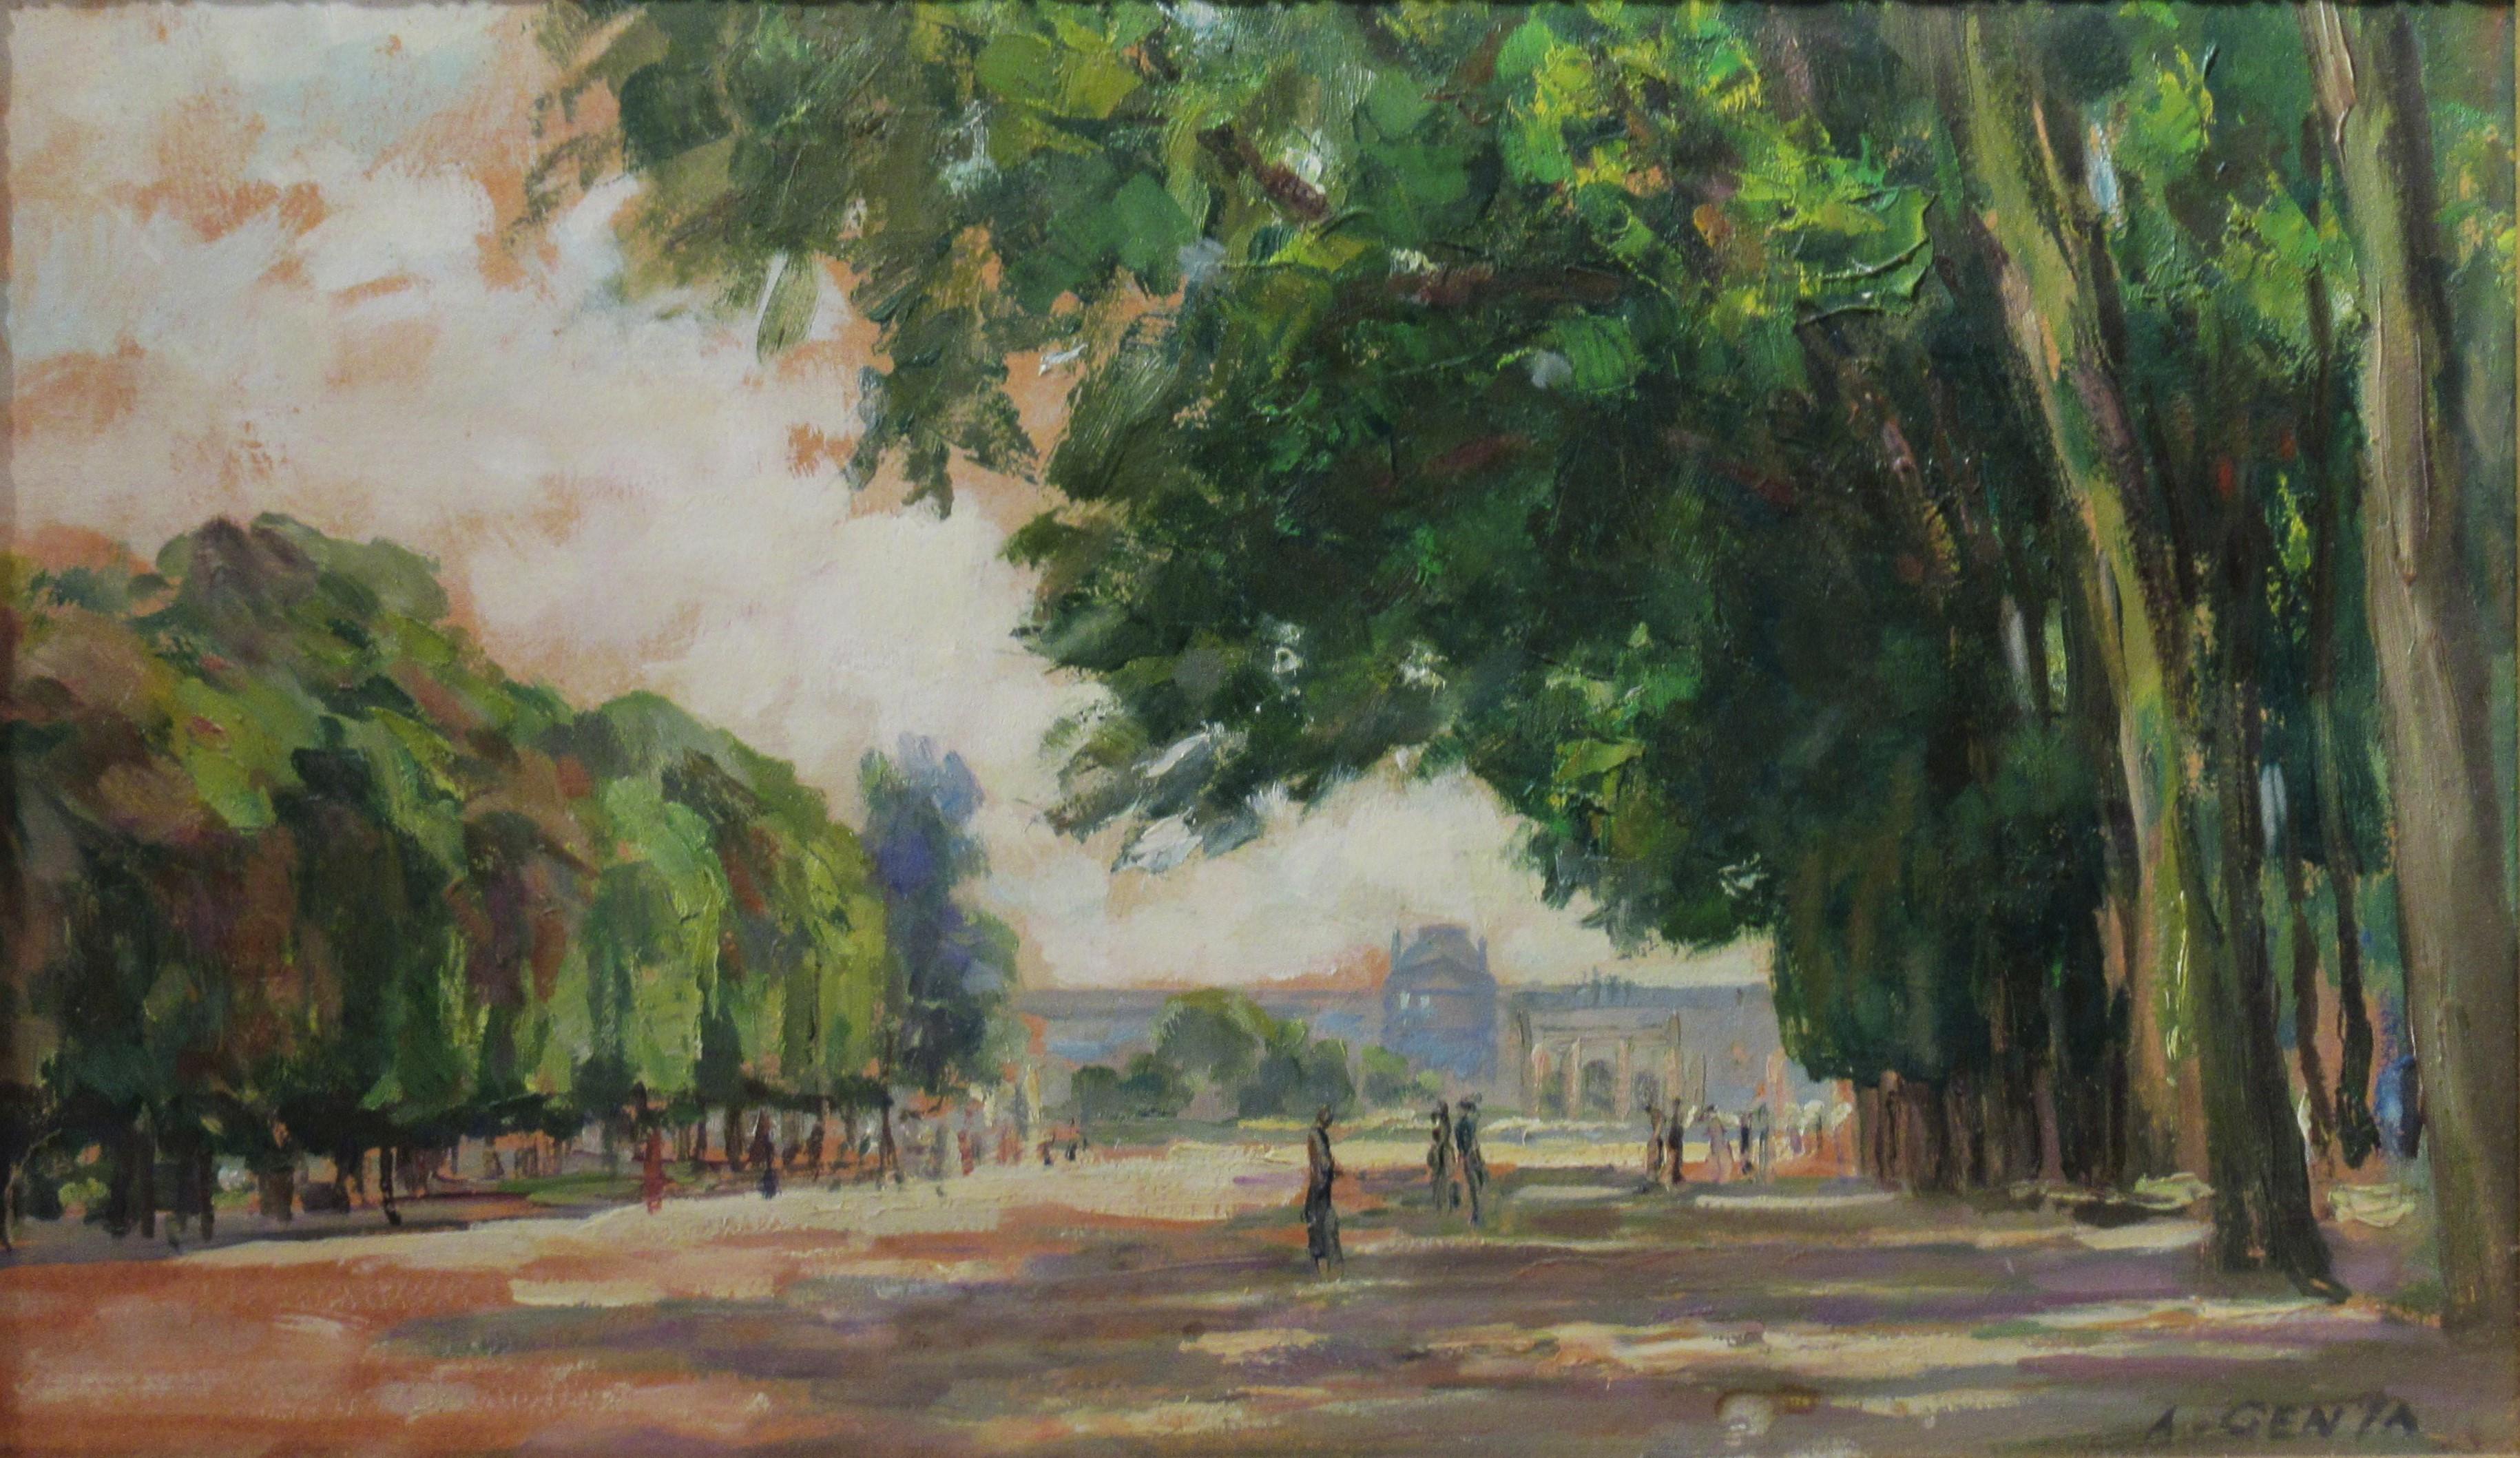 Jardin des Tuileries, Paris - Painting by Albert Genta